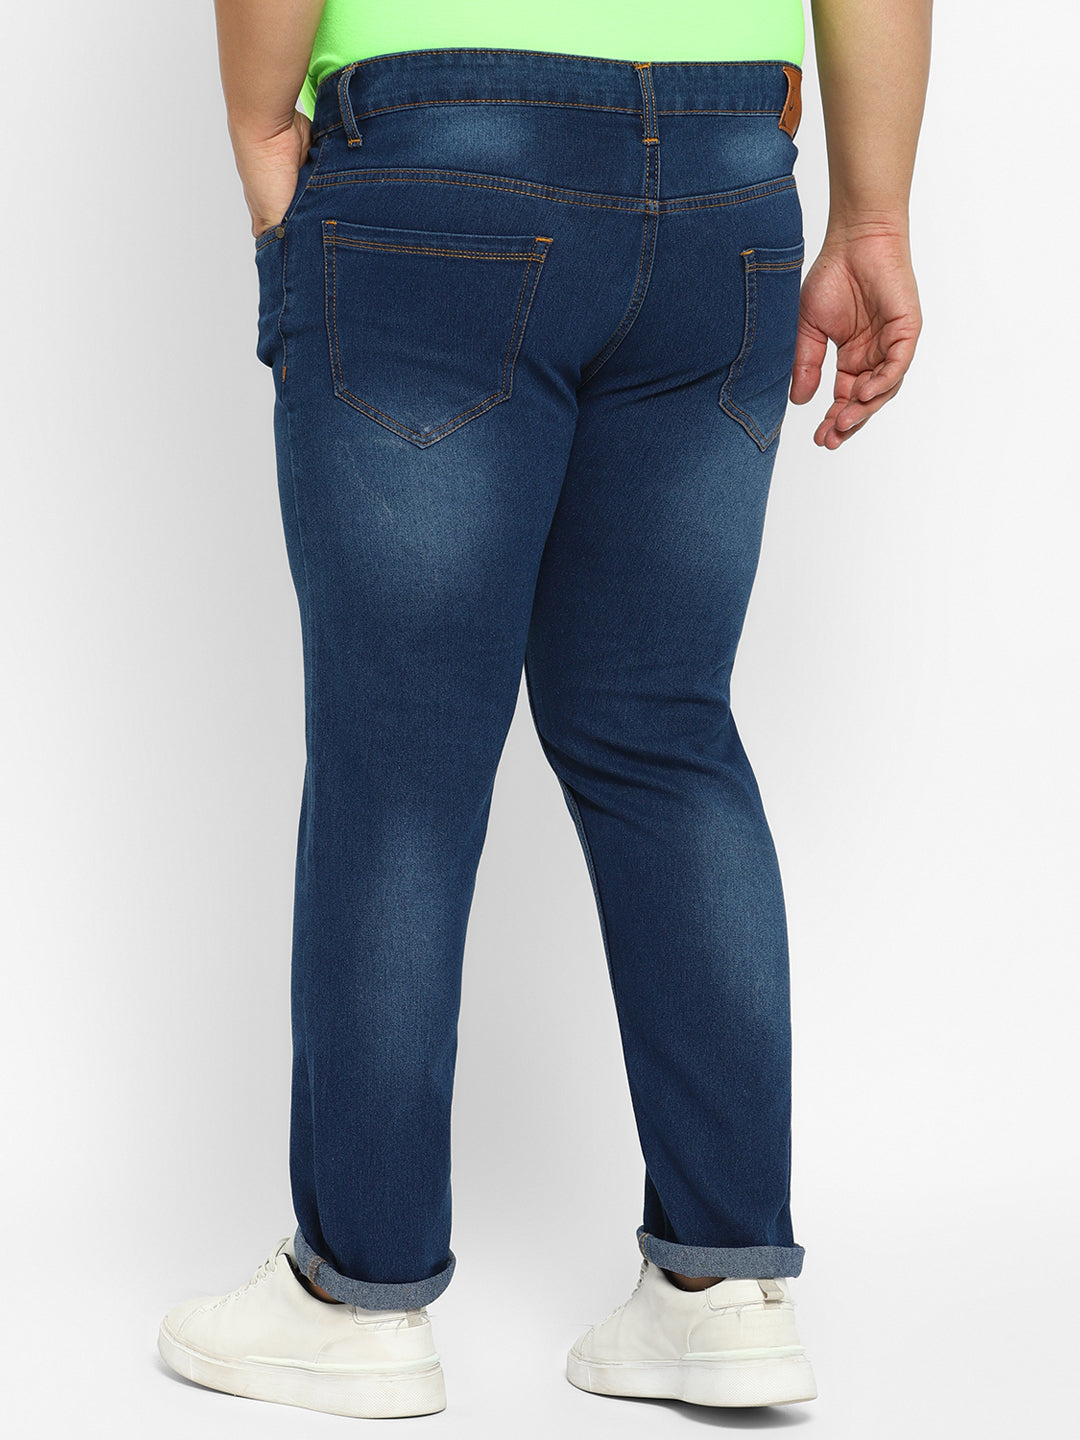 Men's Blue Regular Fit Washed Denim Jeans Stretchable